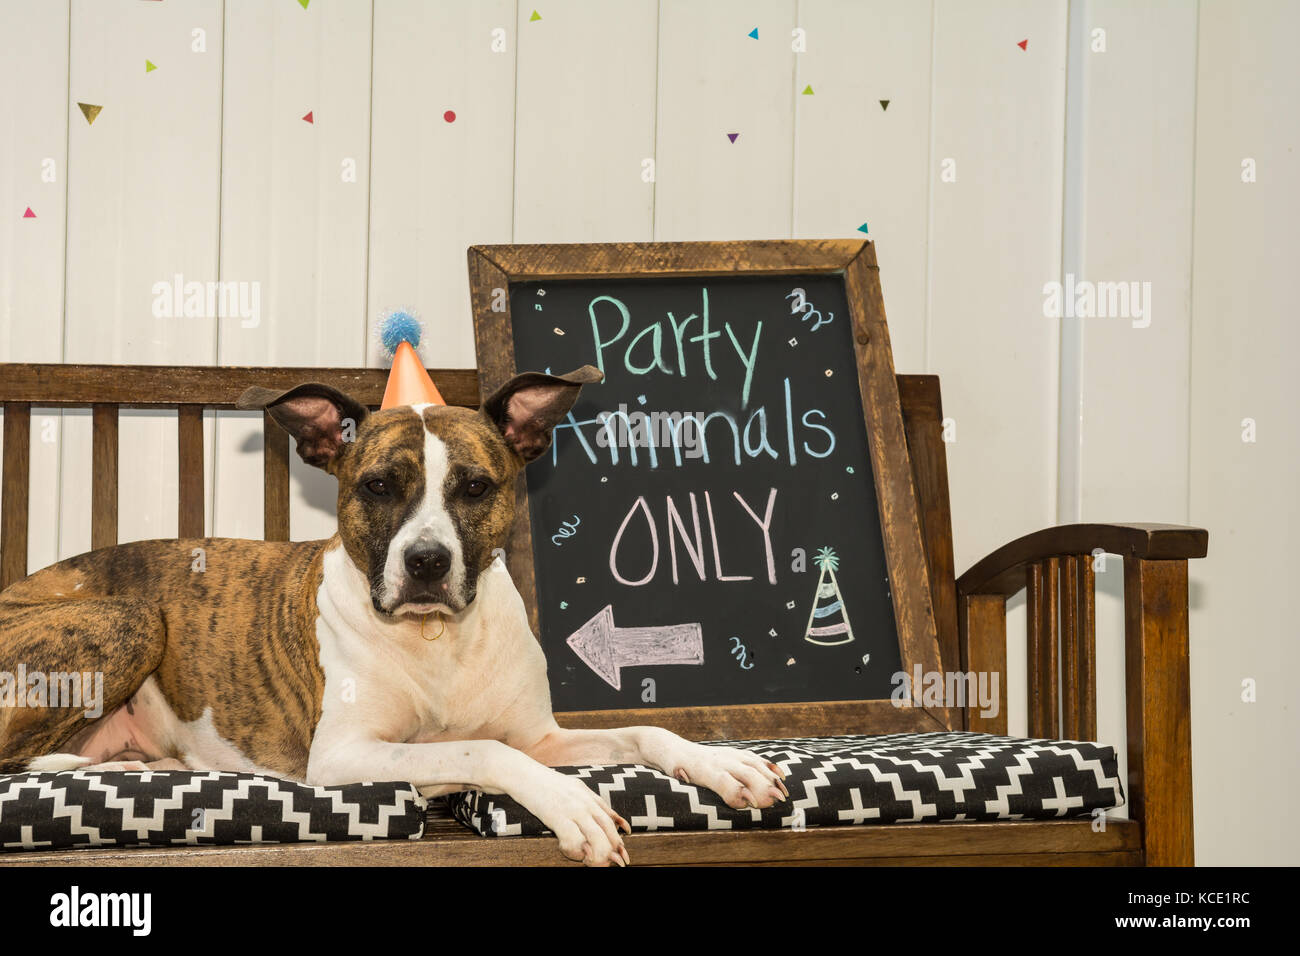 Einen niedlichen Hund auf einer Party Animal theme Party. Stockfoto